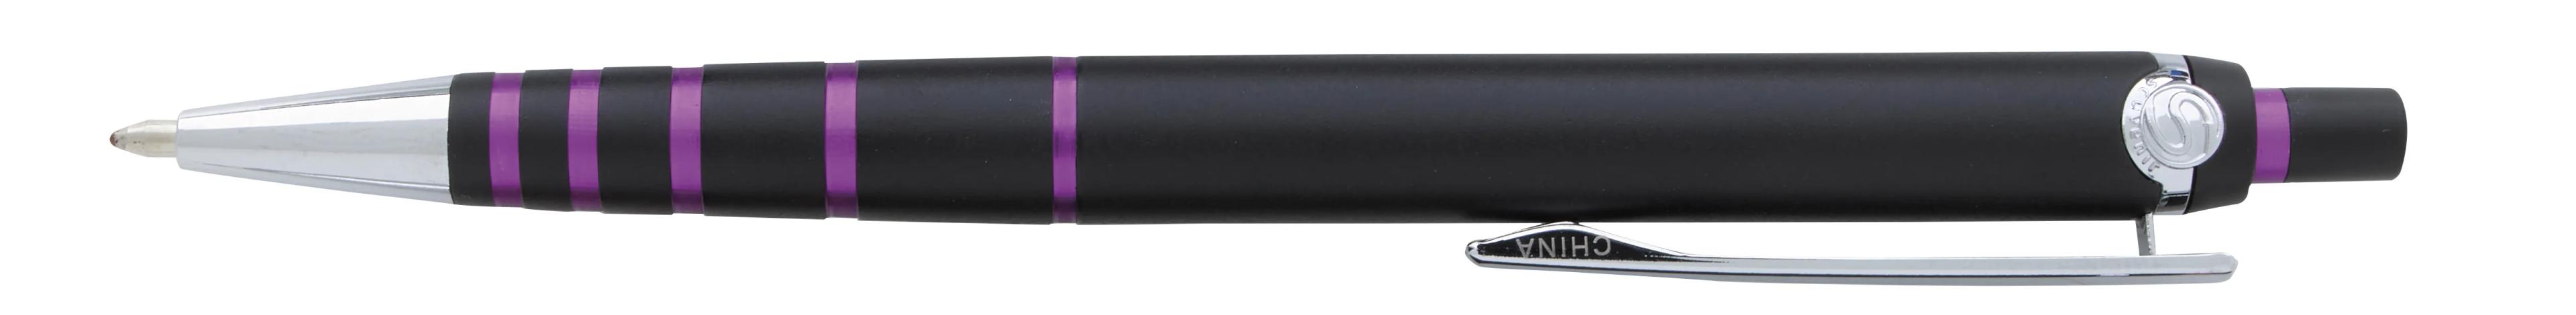 Souvenir® Stage Pen 6 of 43